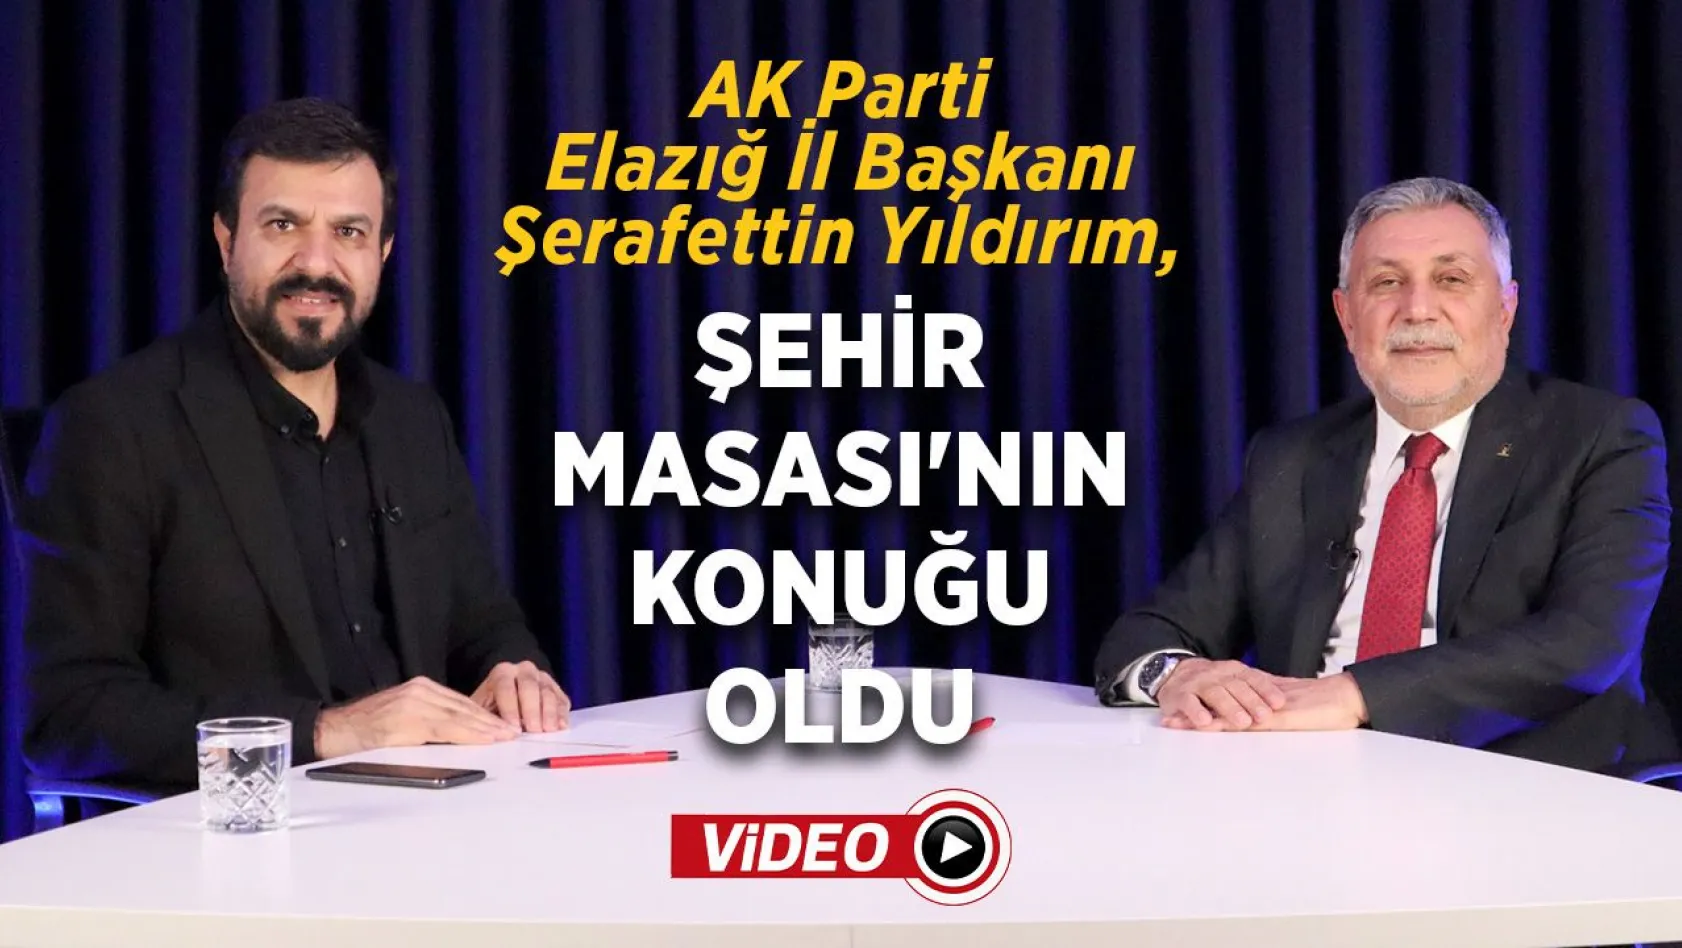 AK Parti Elazığ İl Başkanı Yıldırım, Şehir Masası'nın konuğu oldu